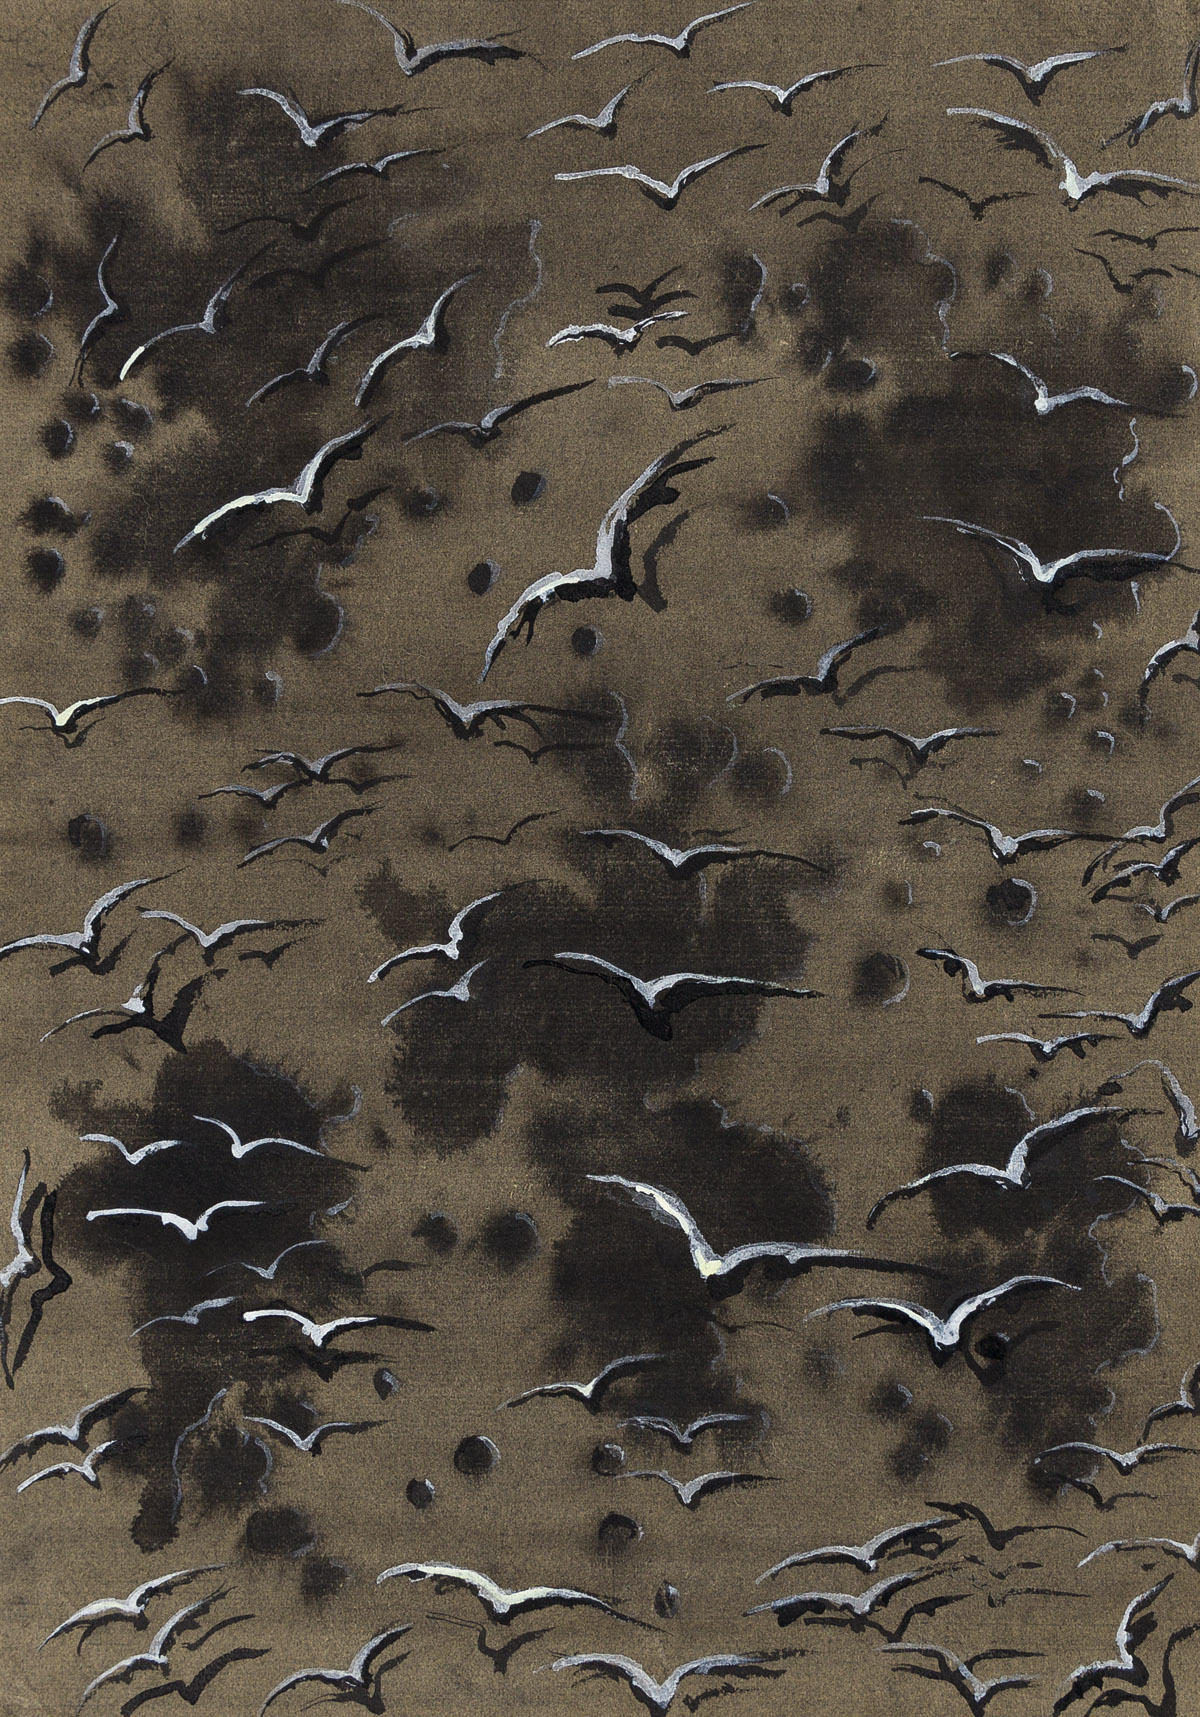 EUGENE BERMAN (1899-1972) Flock of gulls.